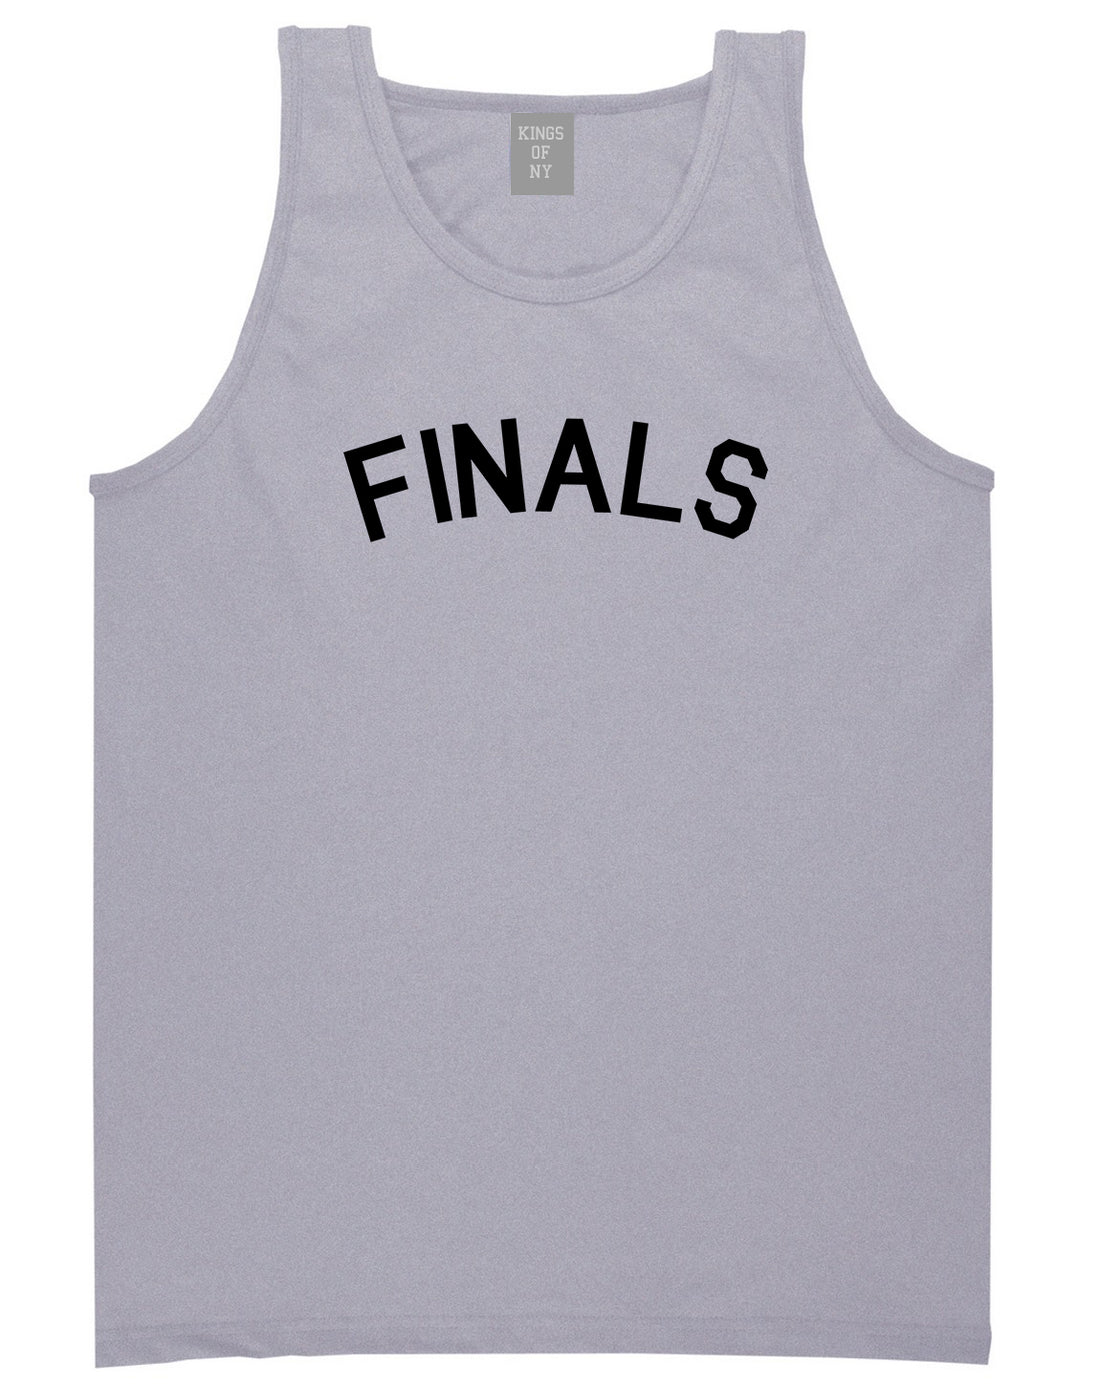 Finals Sports Mens Grey Tank Top Shirt by KINGS OF NY